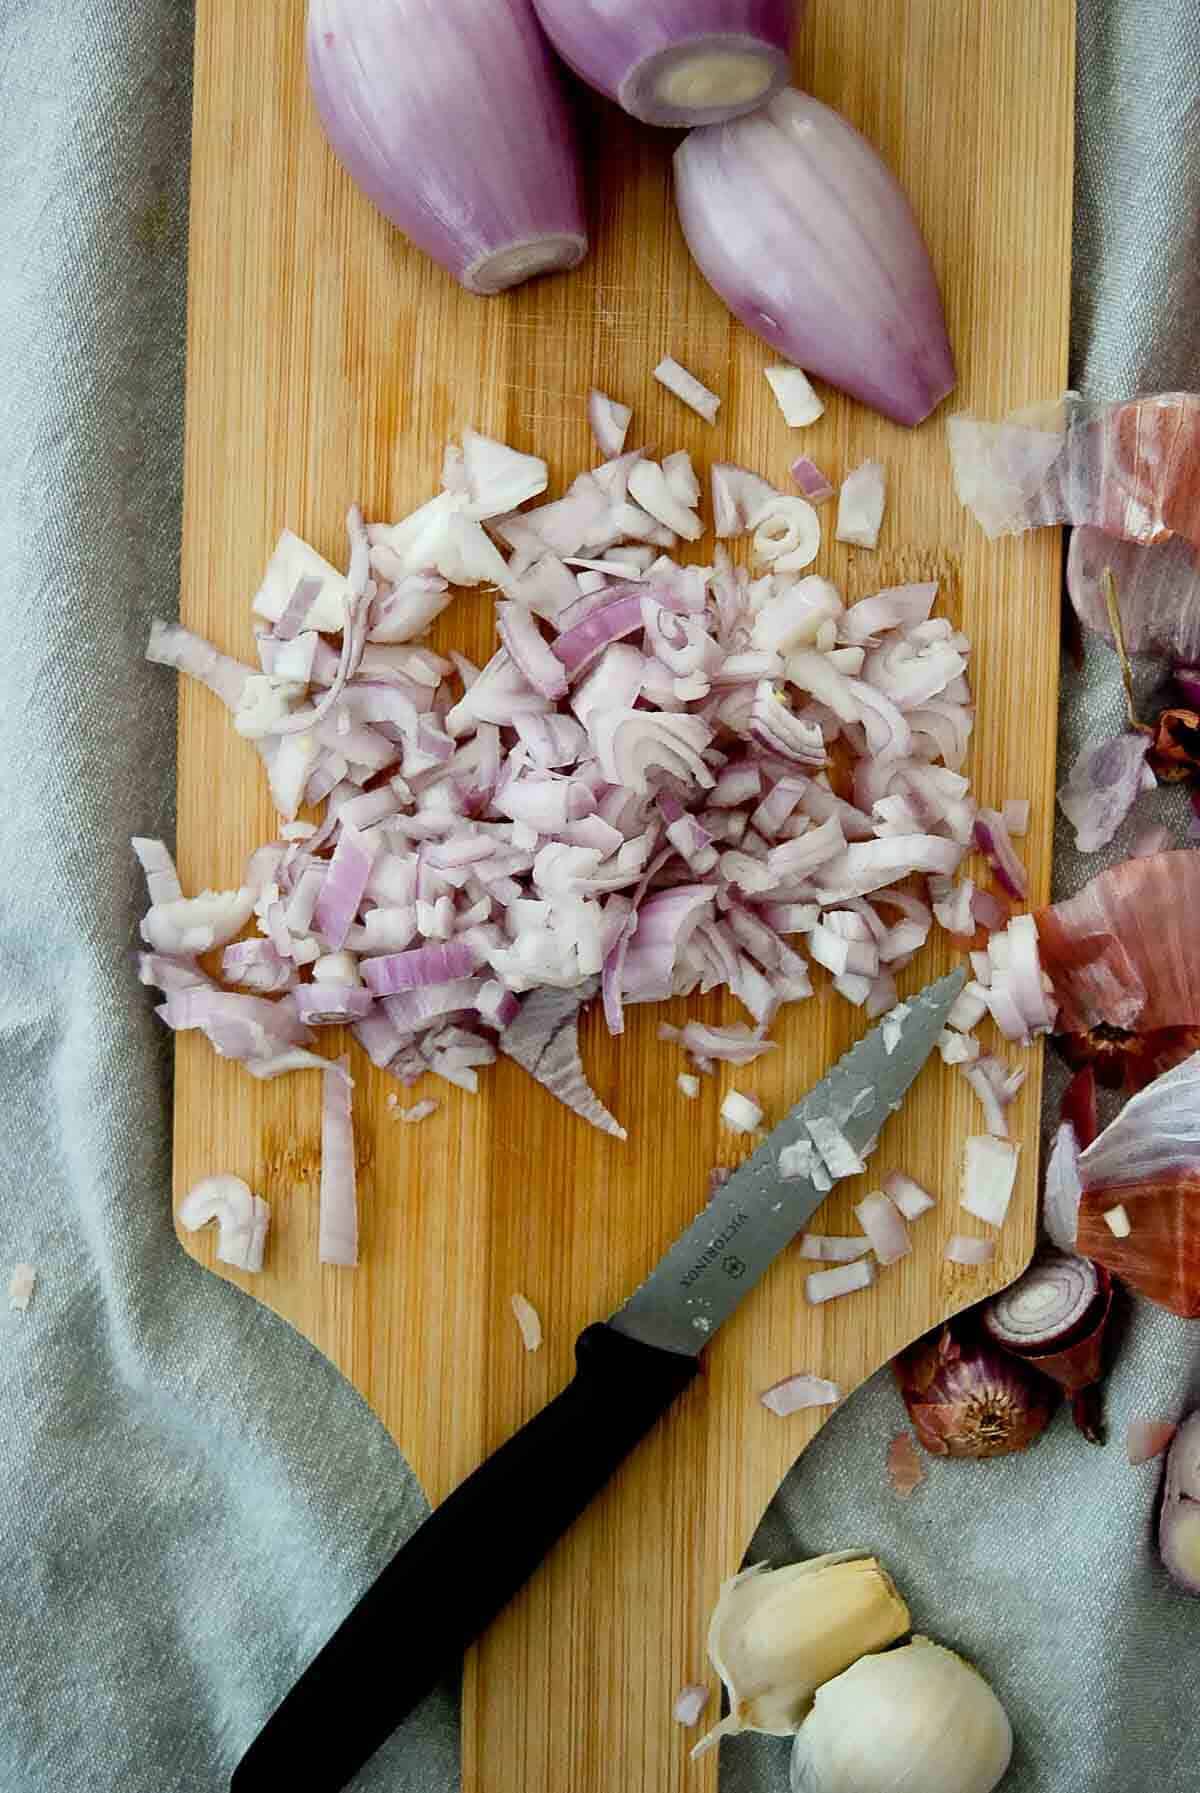 chopped onion and garlic on cutting board.